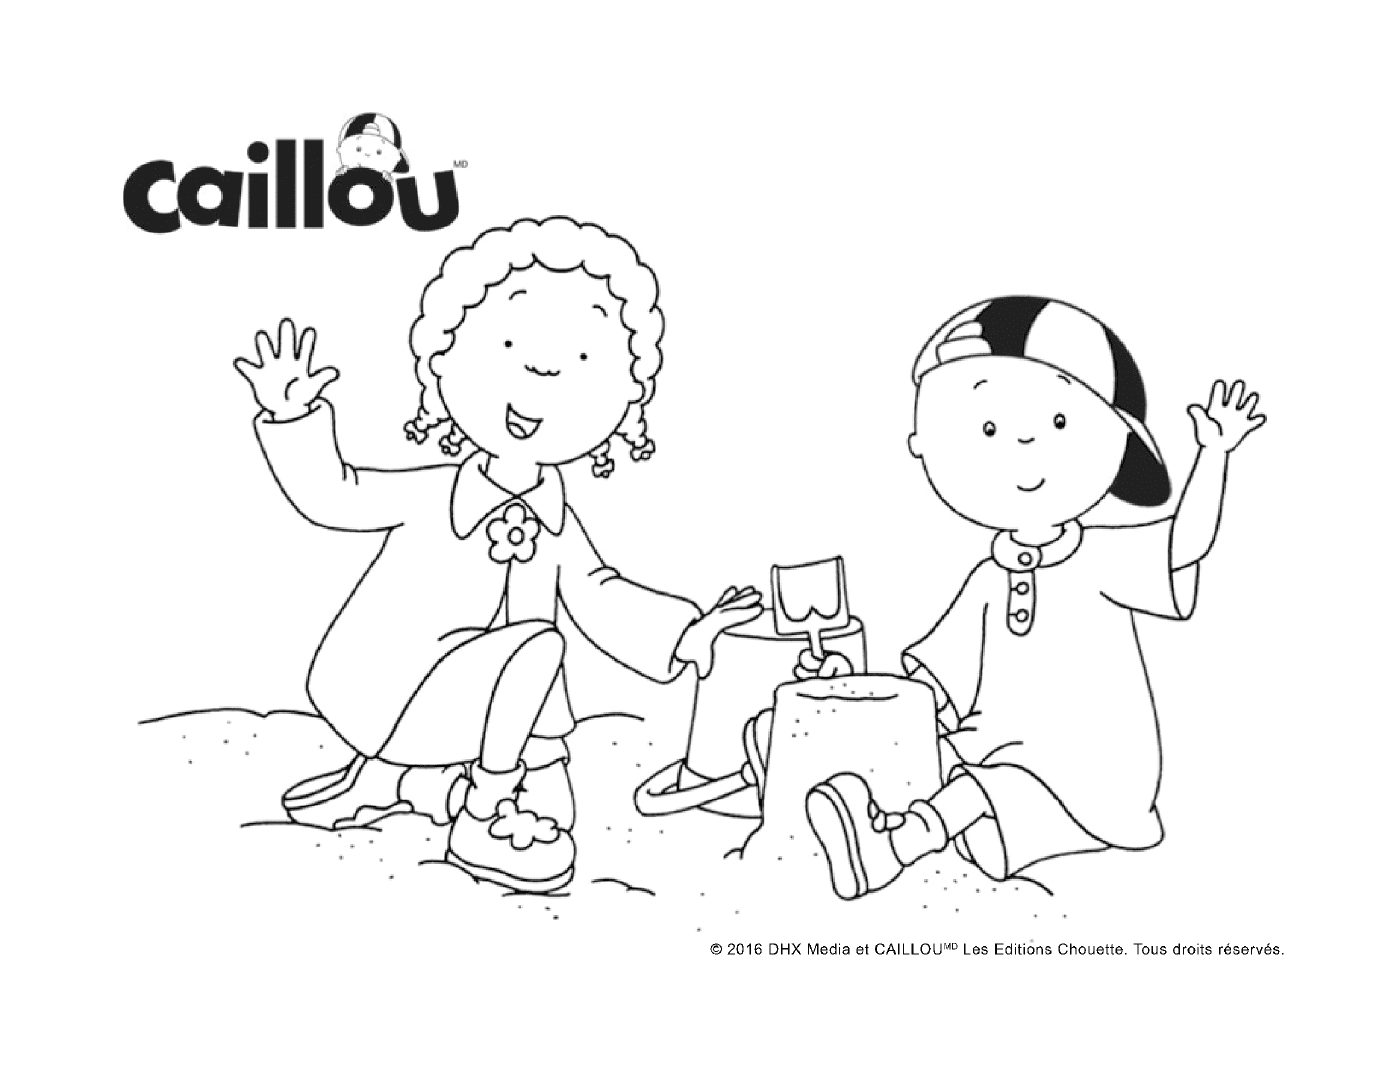  Dia Internacional da Amizade com Caillou e Clementine 